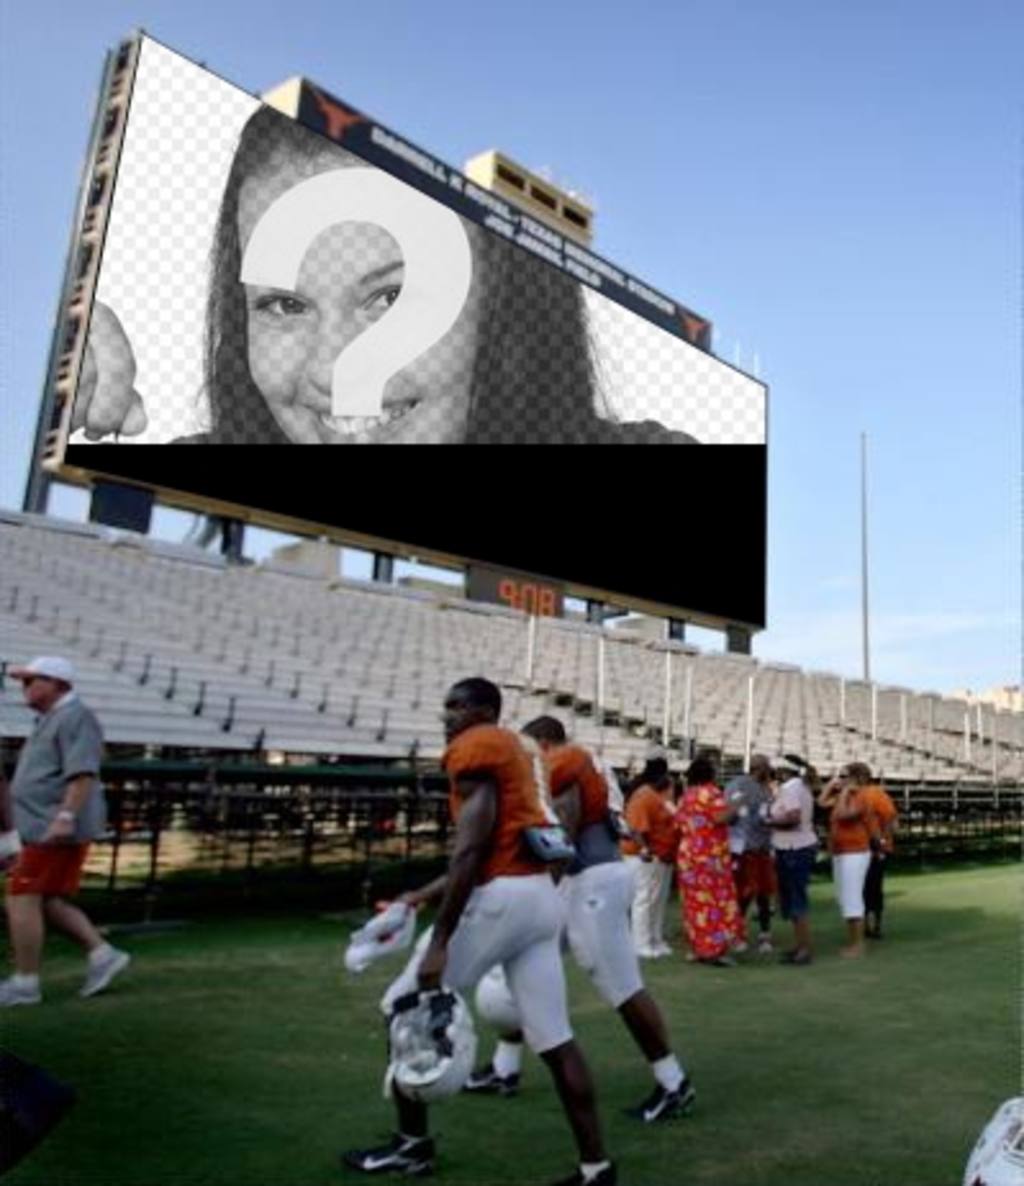 En este fotomontaje, tu fotografía aparecerá en la gran pantalla de un estadio de fútbol americano, donde hay gente, jugadores entre..